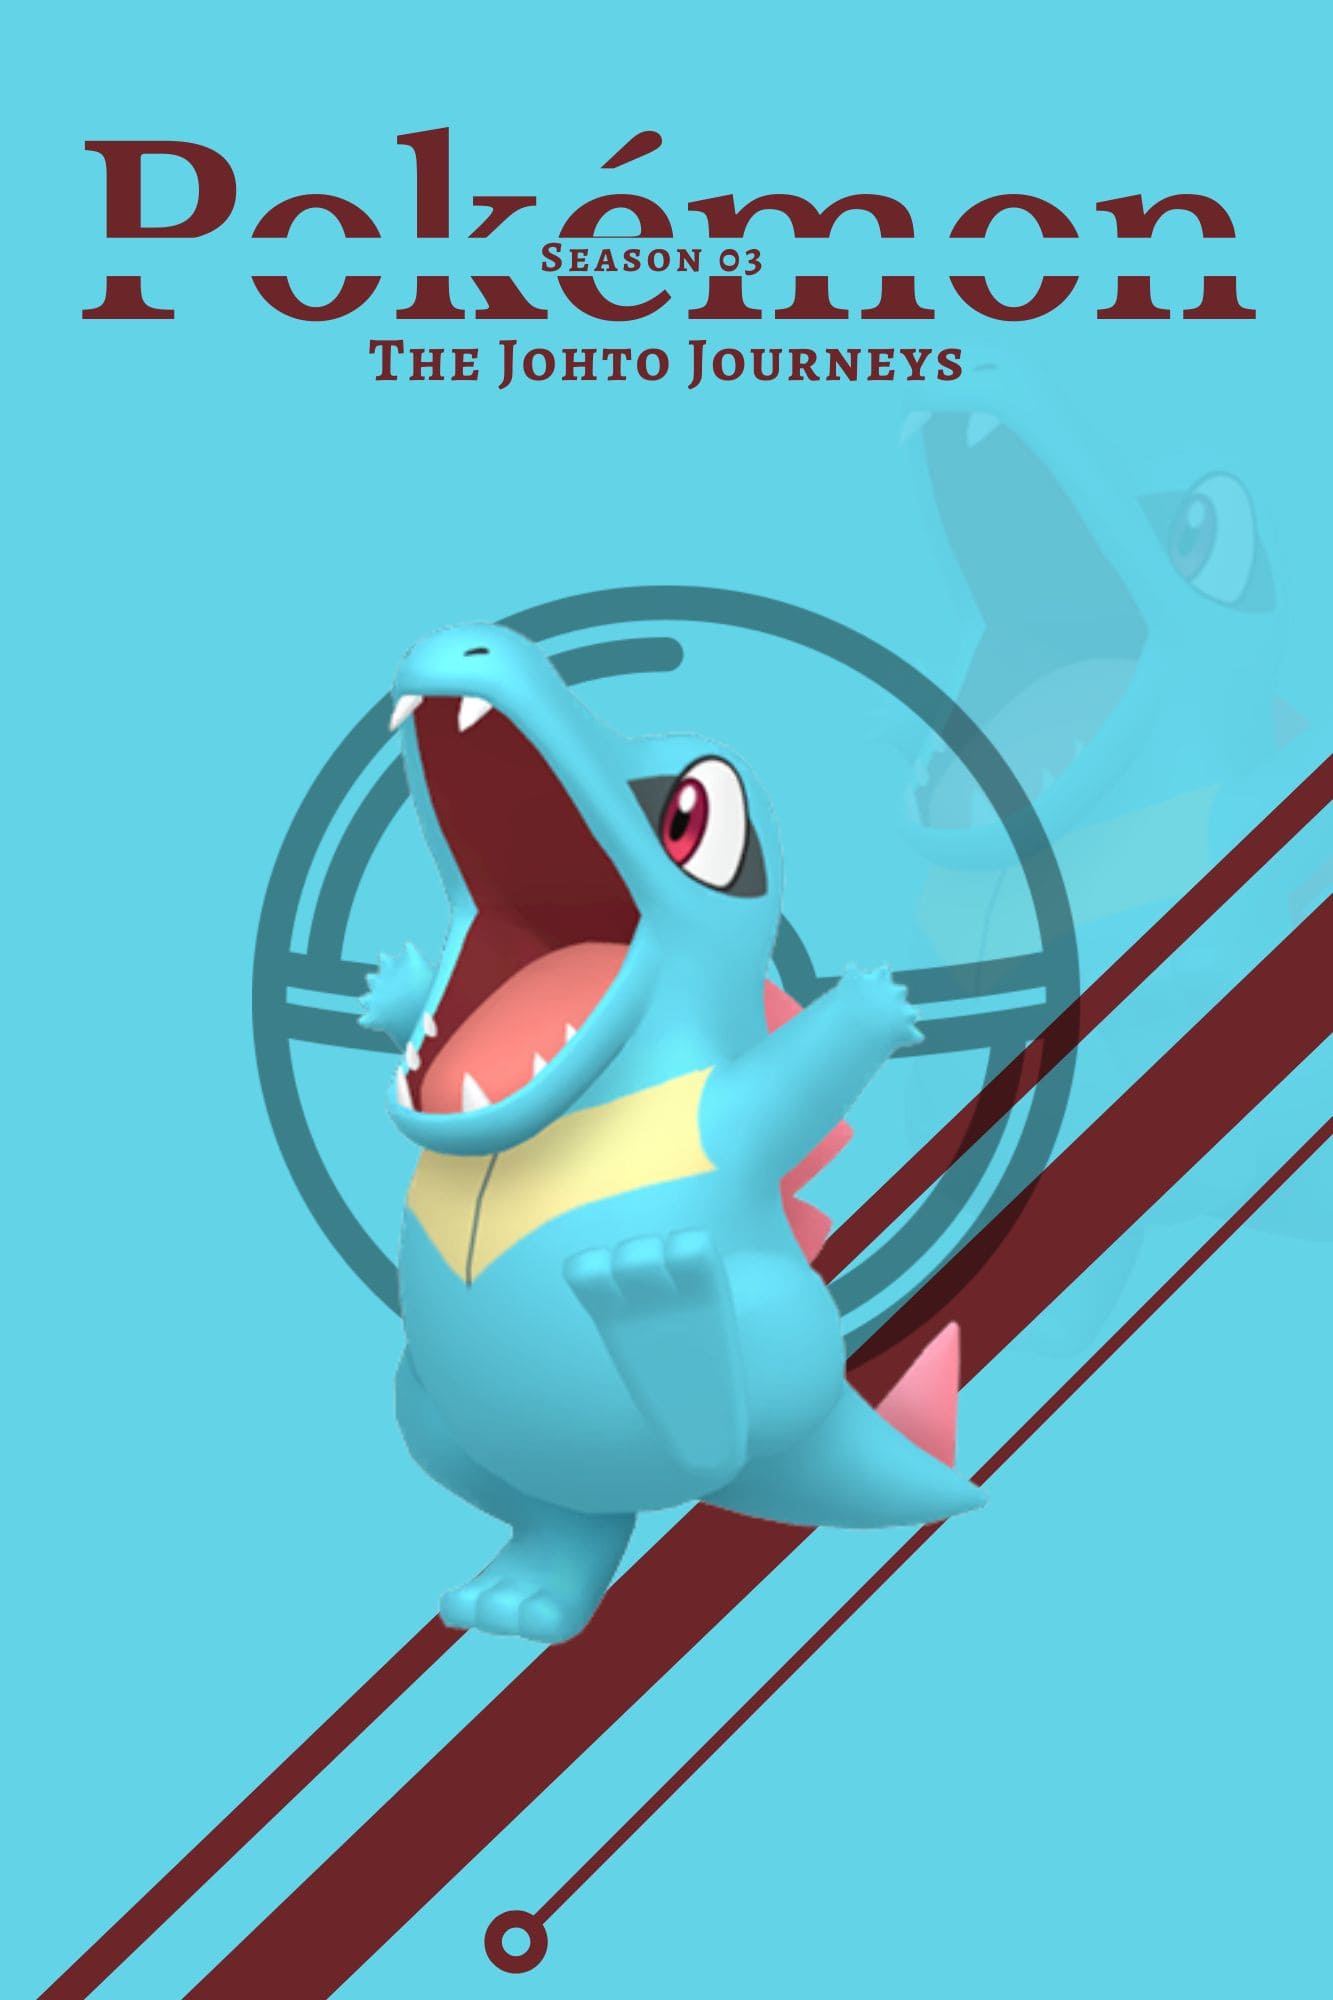 Pokémon: The Johto Journeys